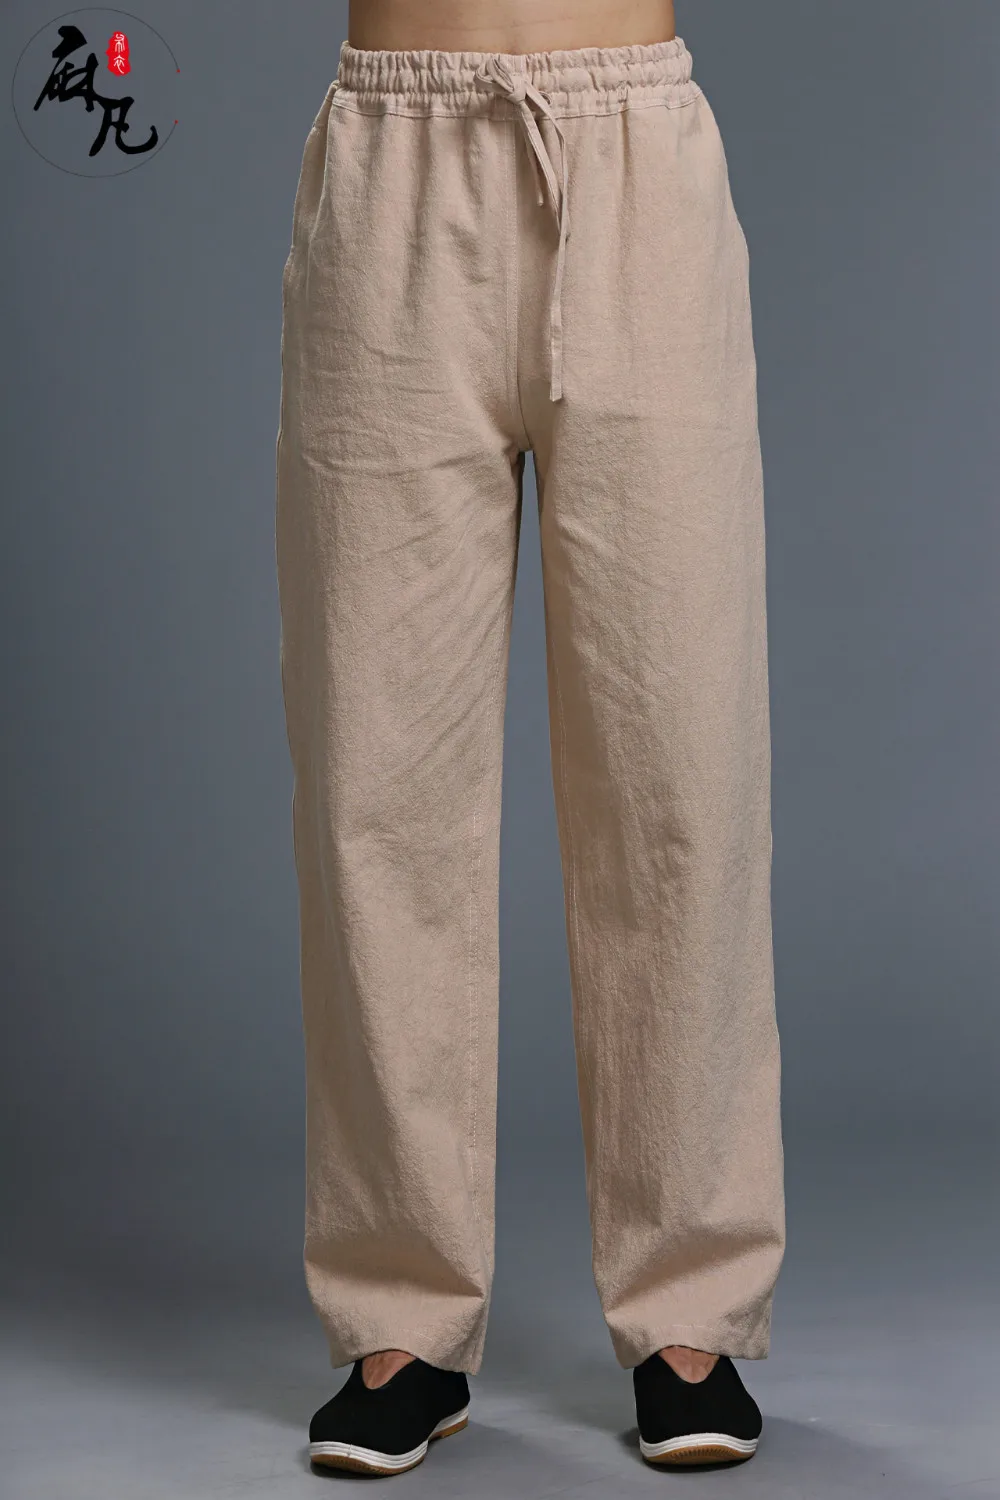 Hisenky китайские штаны для кунг-фу льняные хлопковые мужские повседневные штаны с эластичной талией спортивные штаны прямые брюки для бега